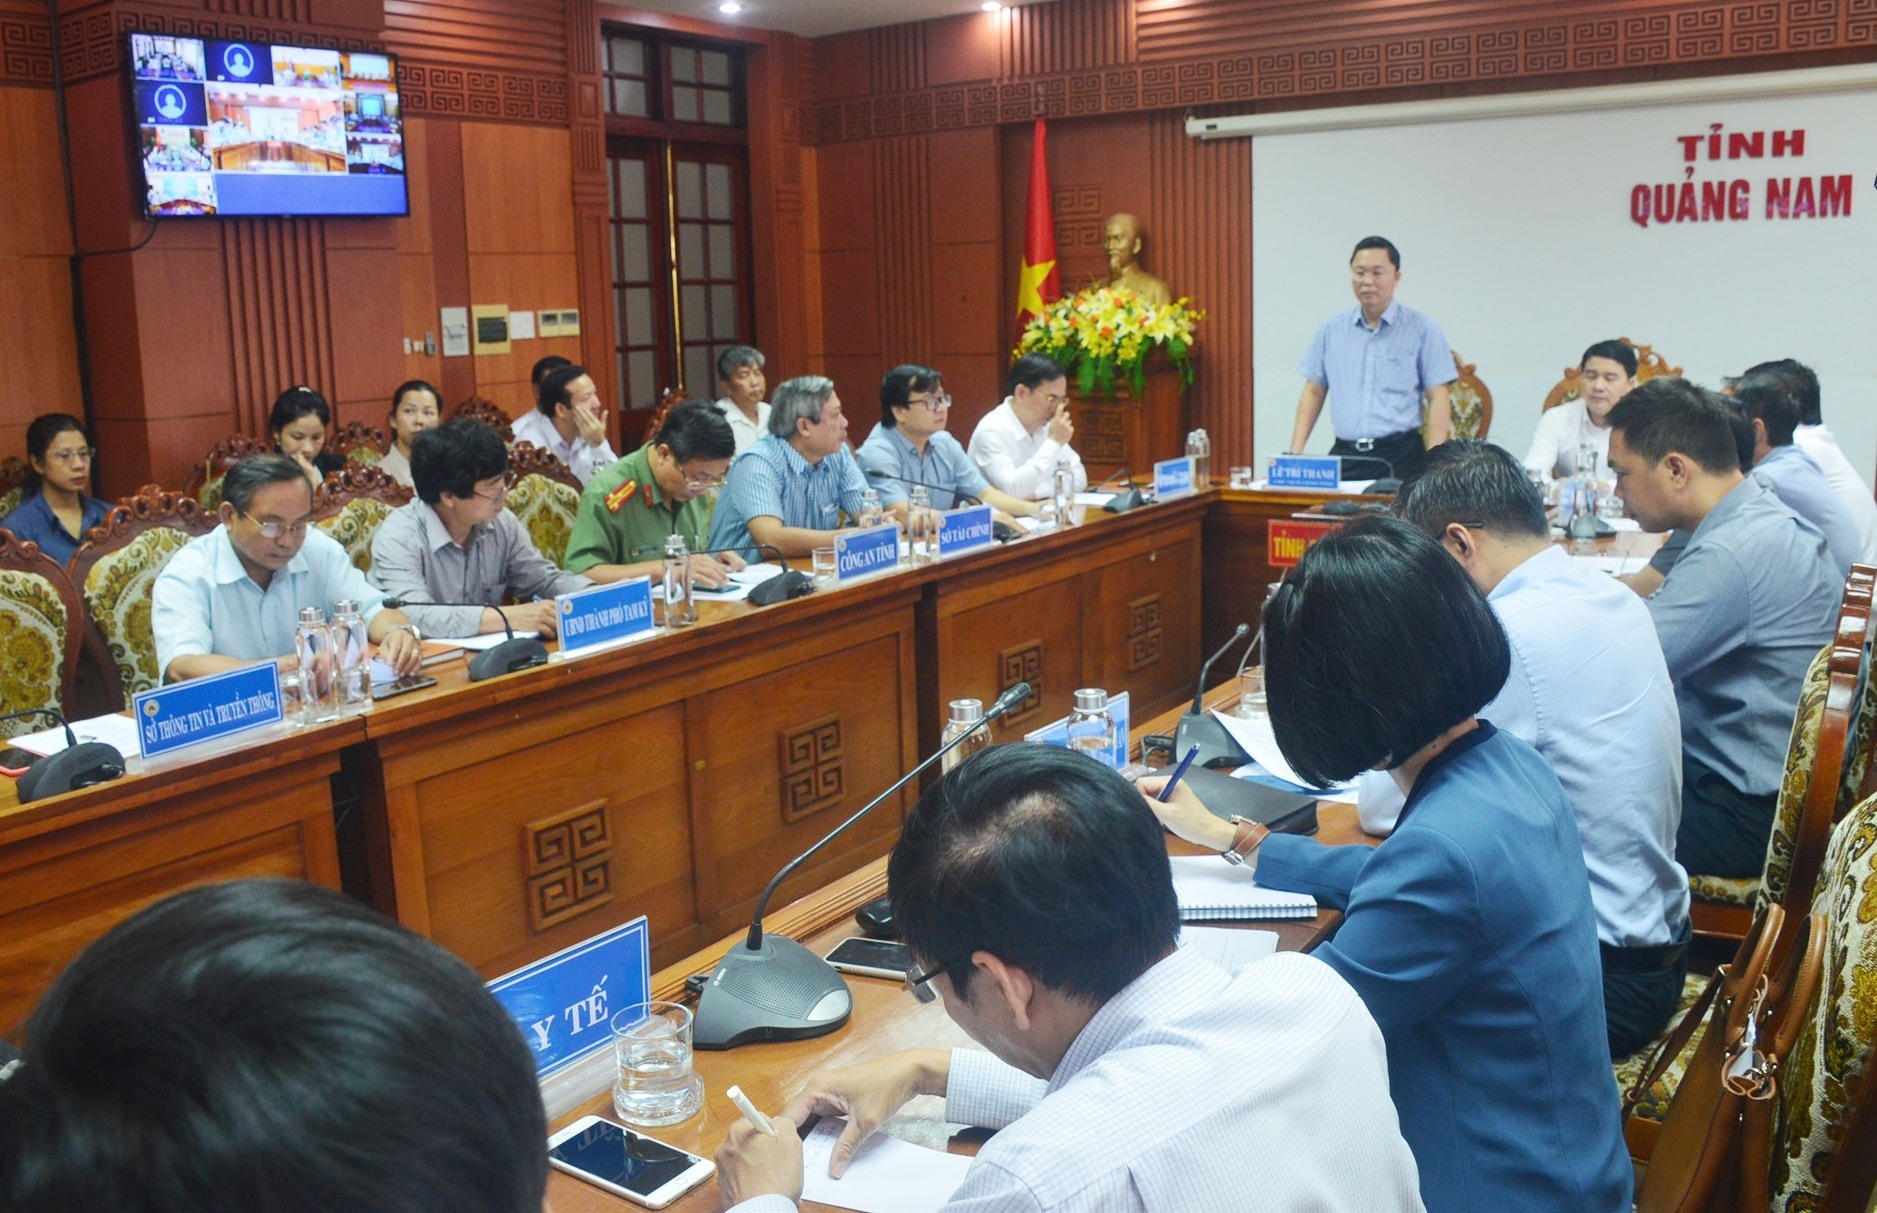 Liên kết du lịch giữa Vùng kinh tế trọng điểm miền Trung với Hà Nội và thành phố Hồ Chí Minh